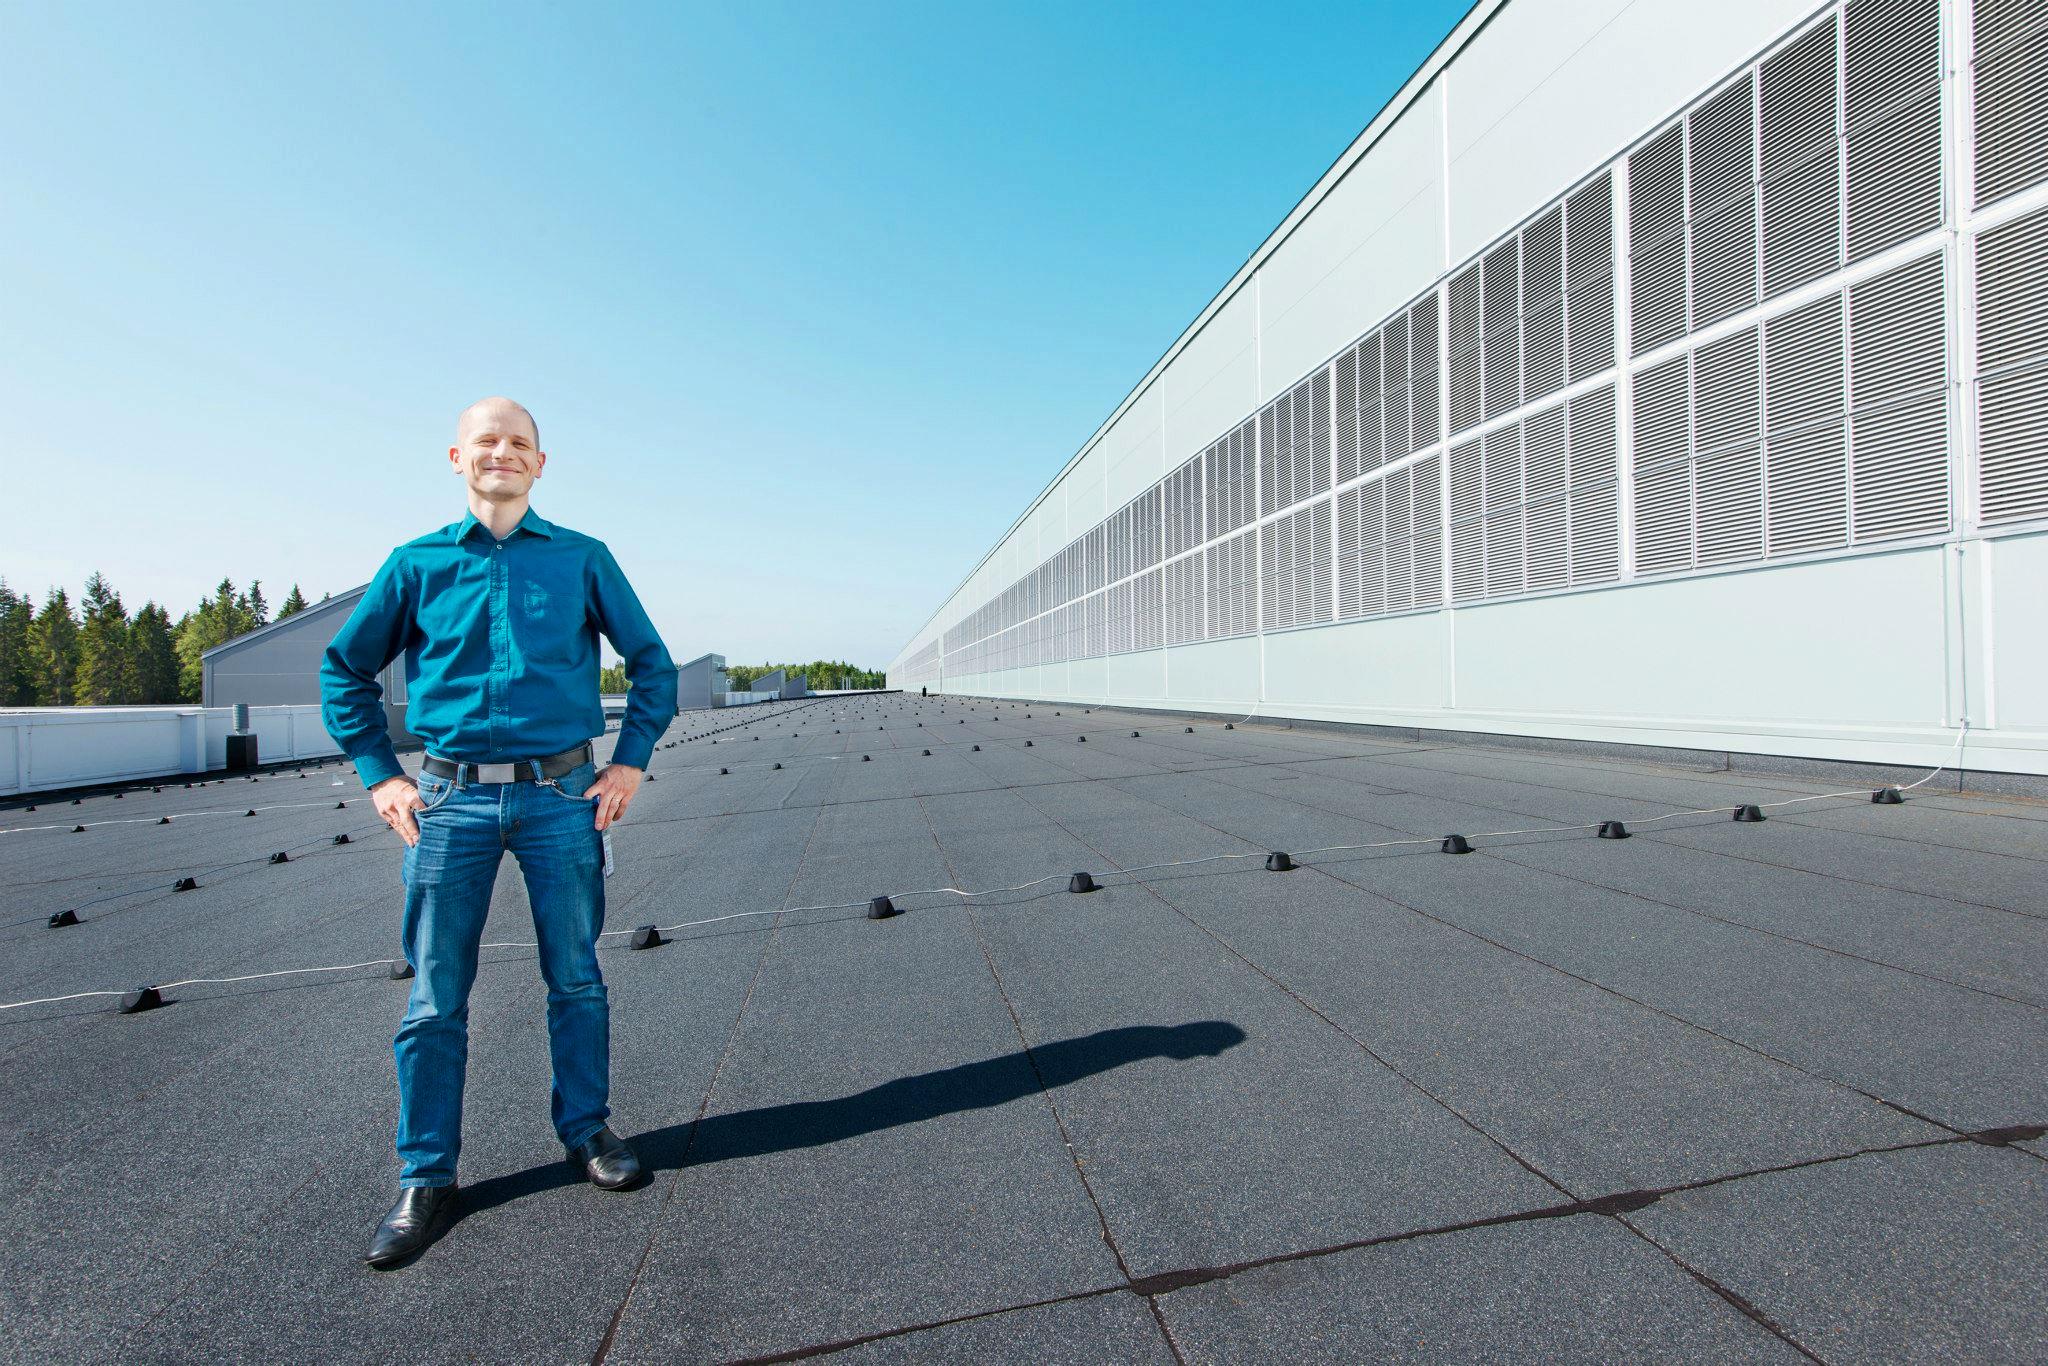 Sjefen for datasenteret, Joel Kjellgren, står foran innsuget av kald luft (til høyre).Foto: Facebook